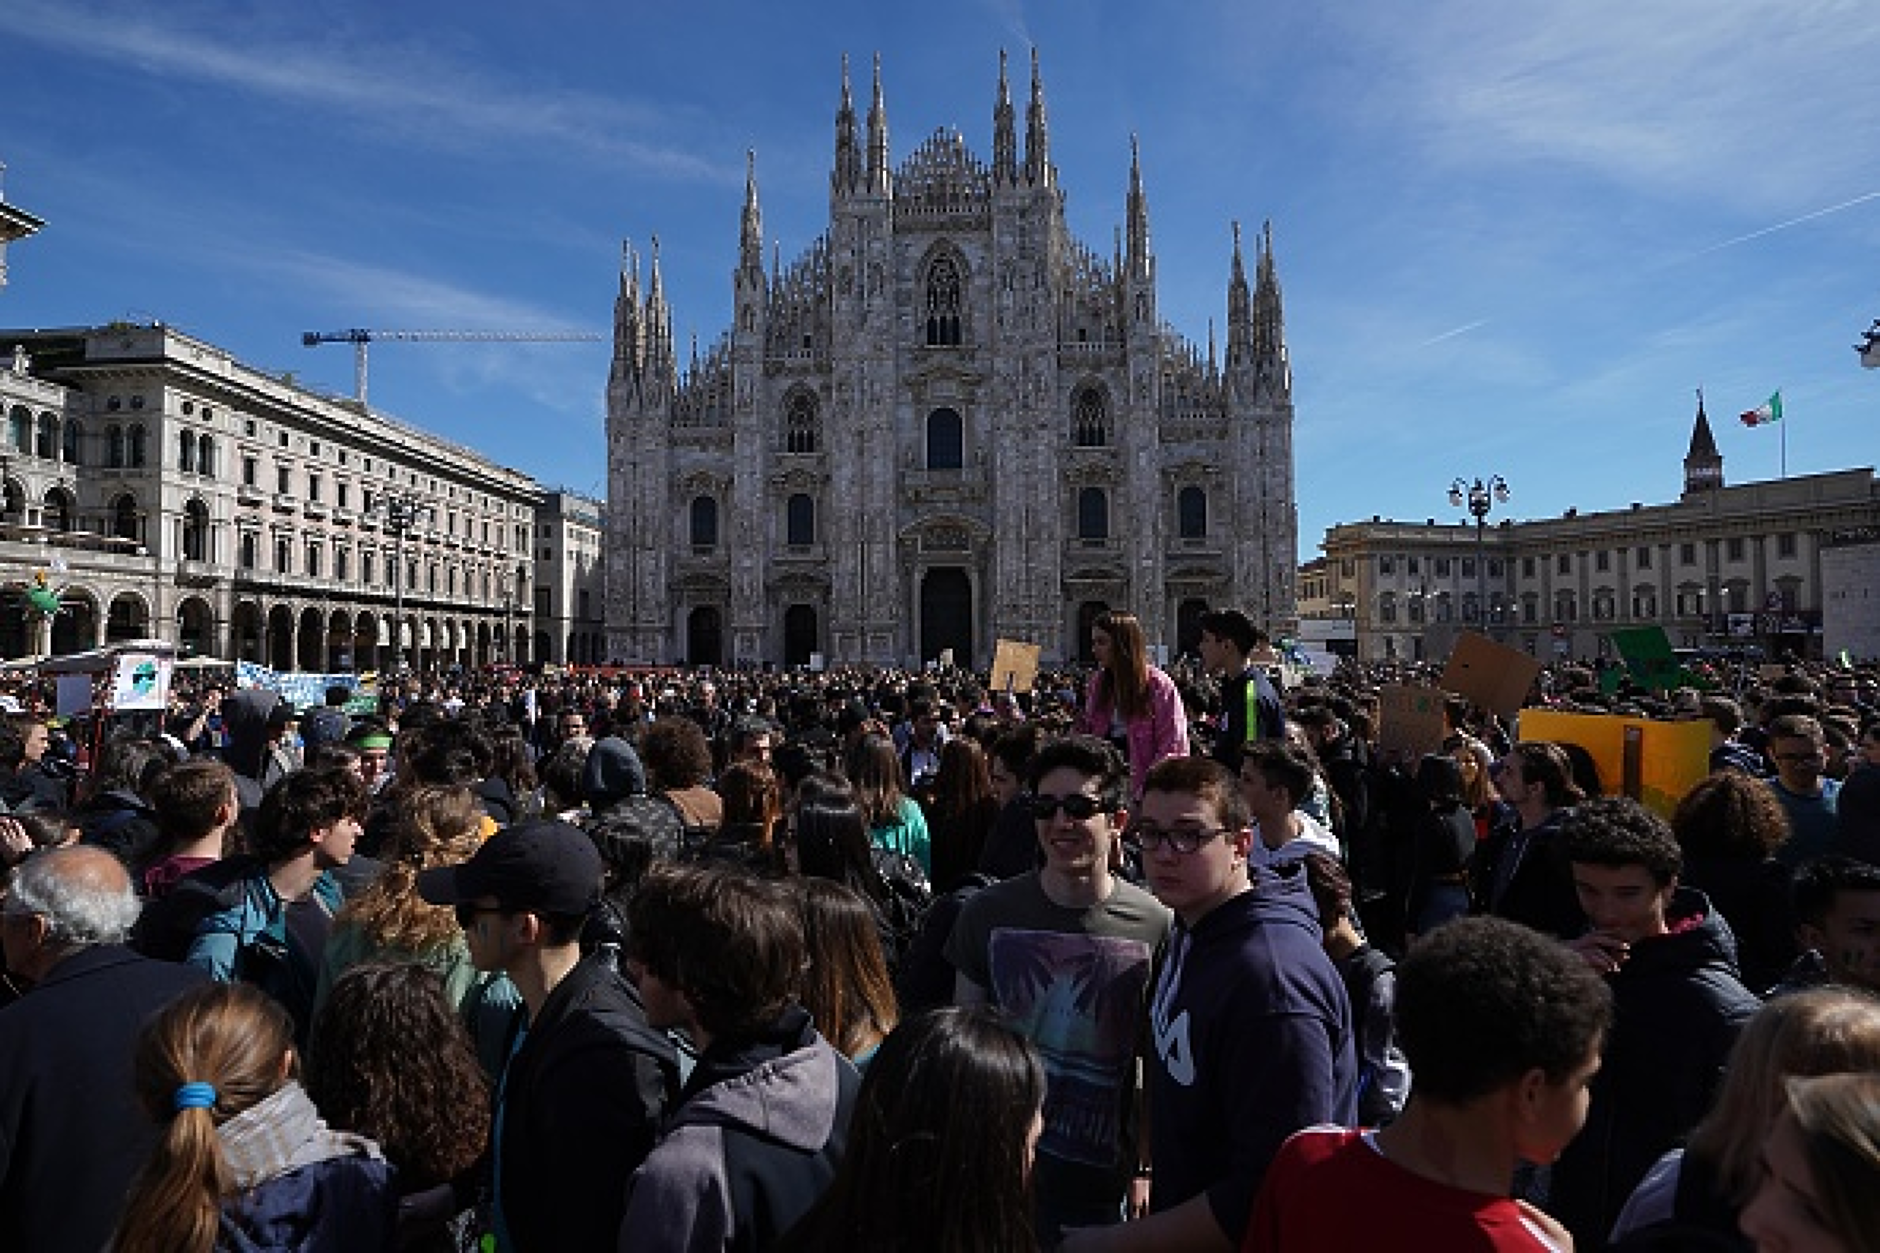 Протести срещу затварянето на джамии в Италия